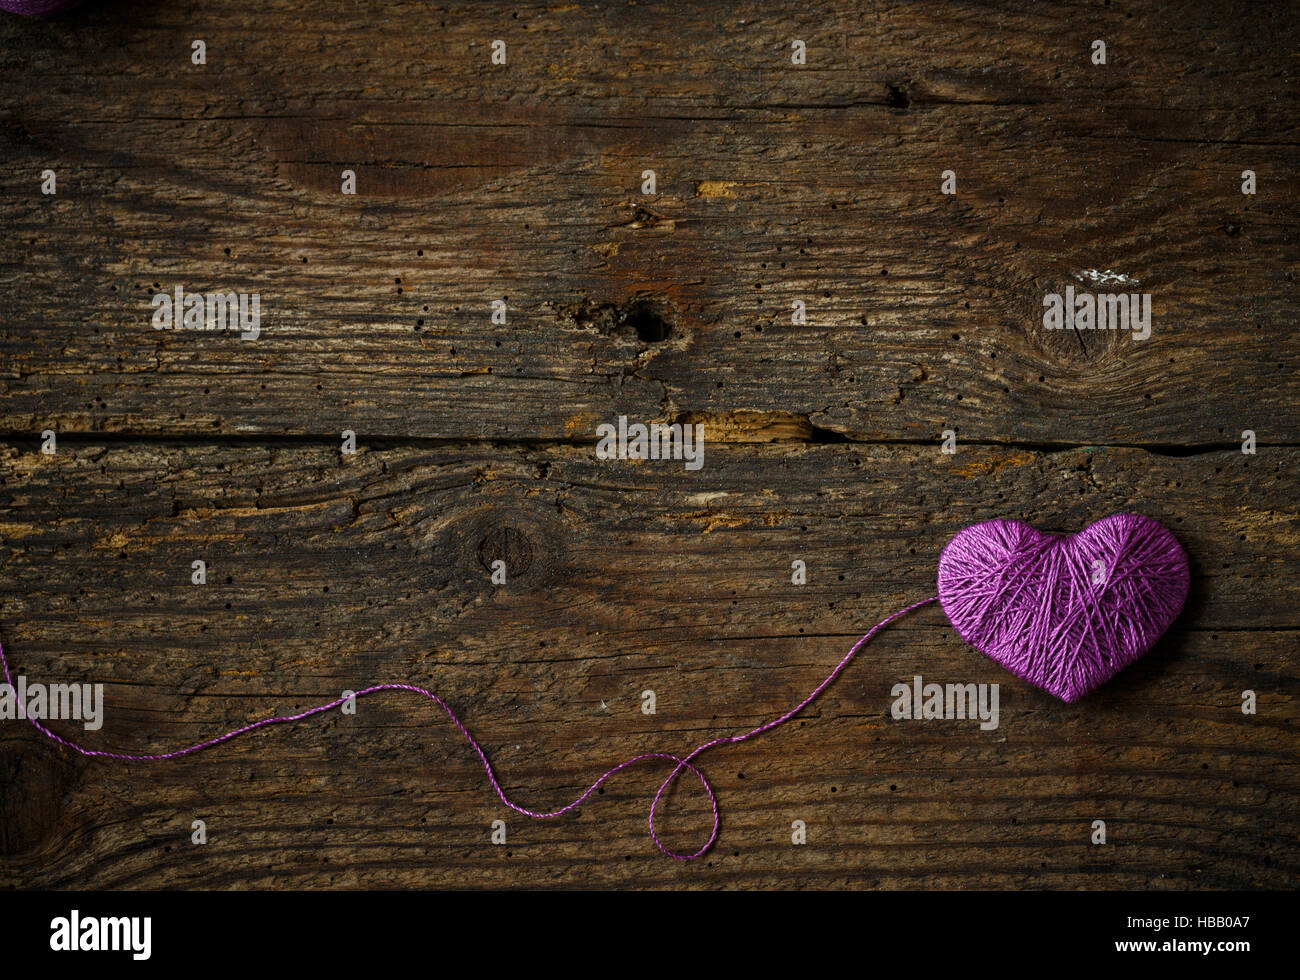 Cuore viola con una palla di filo sul vecchio squallido sfondo di legno. Immagine del giorno di San Valentino Foto Stock